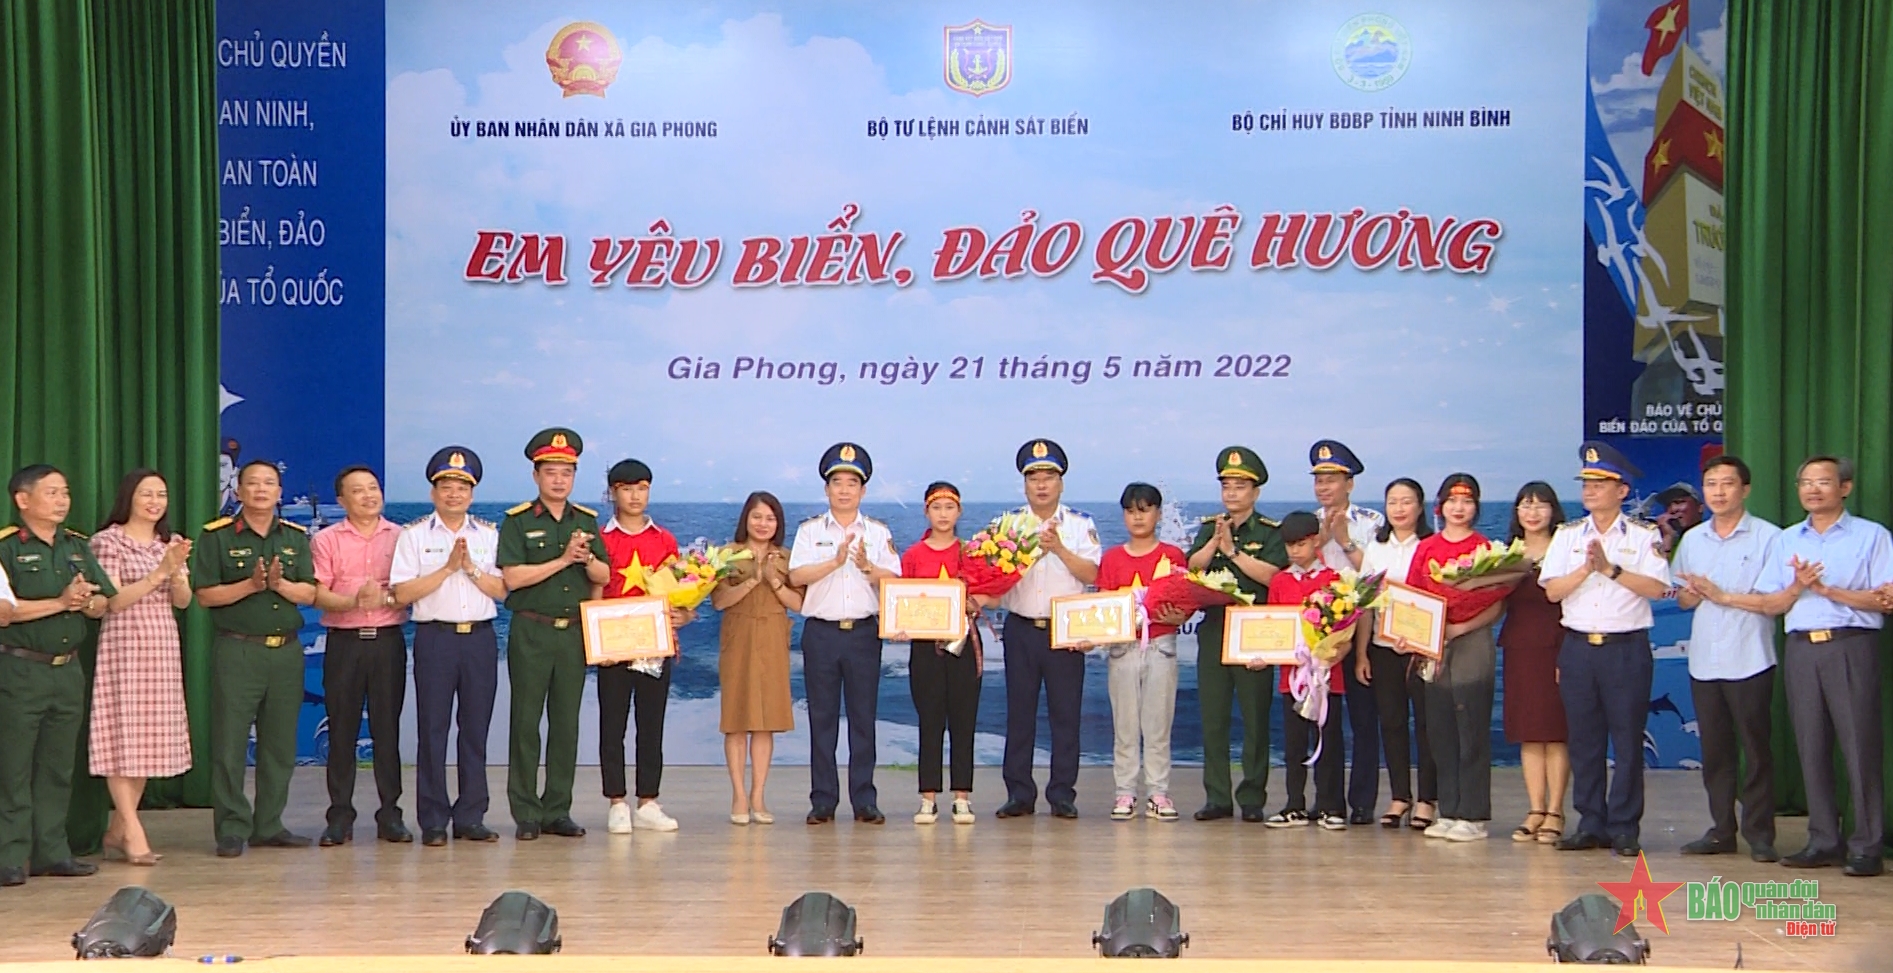 Bộ tư lệnh Cảnh sát biển Việt Nam phối hợp tổ chức Cuộc thi “Em yêu biển đảo quê hương” tại Ninh Bình